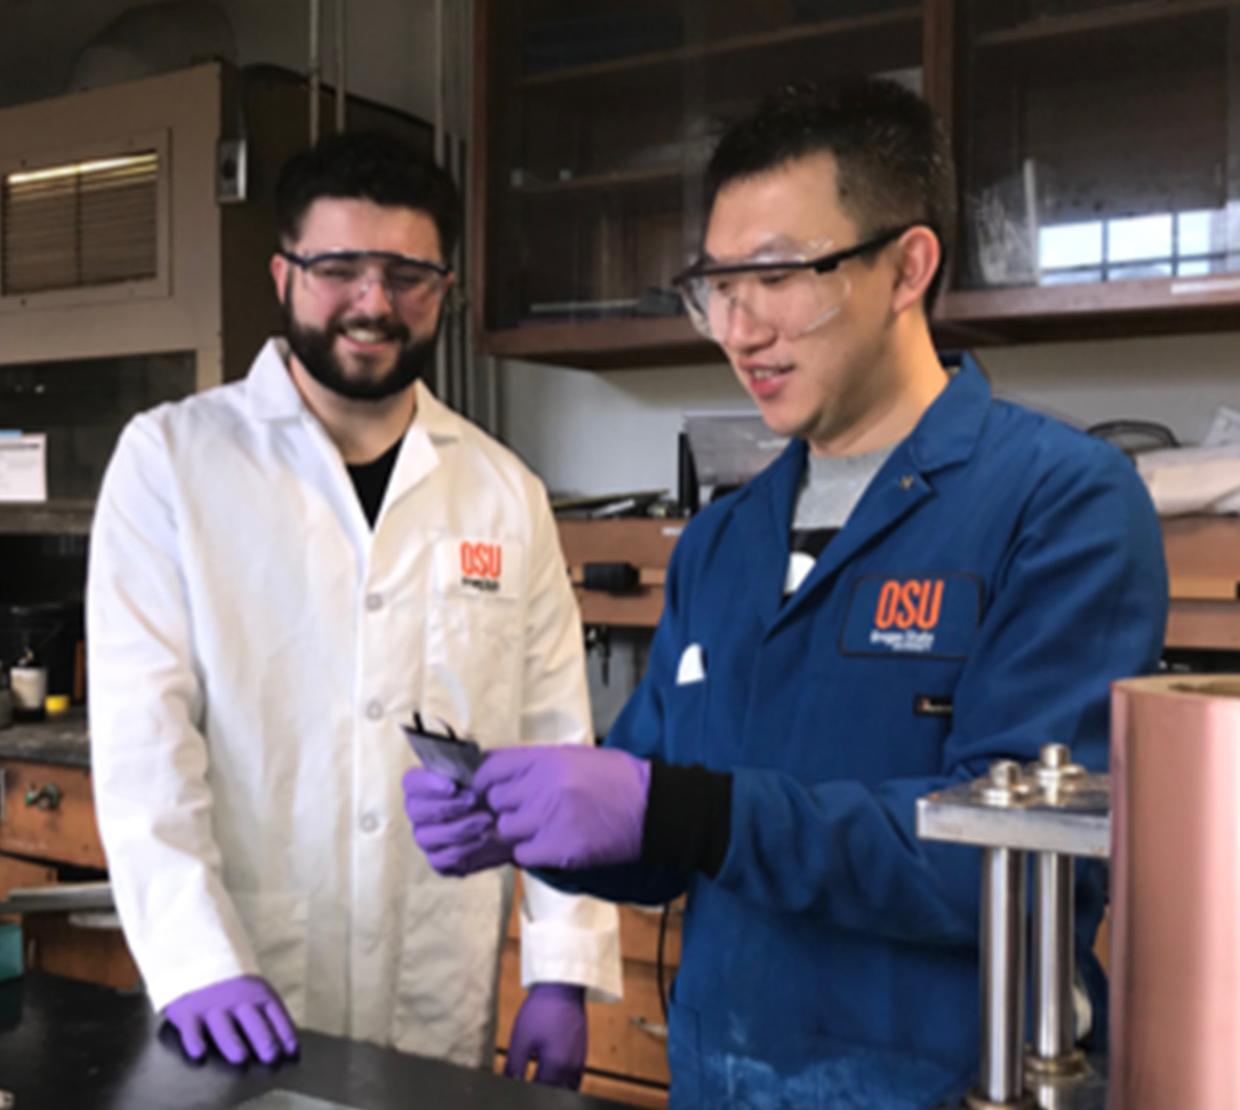 Researchers in David Ji's lab